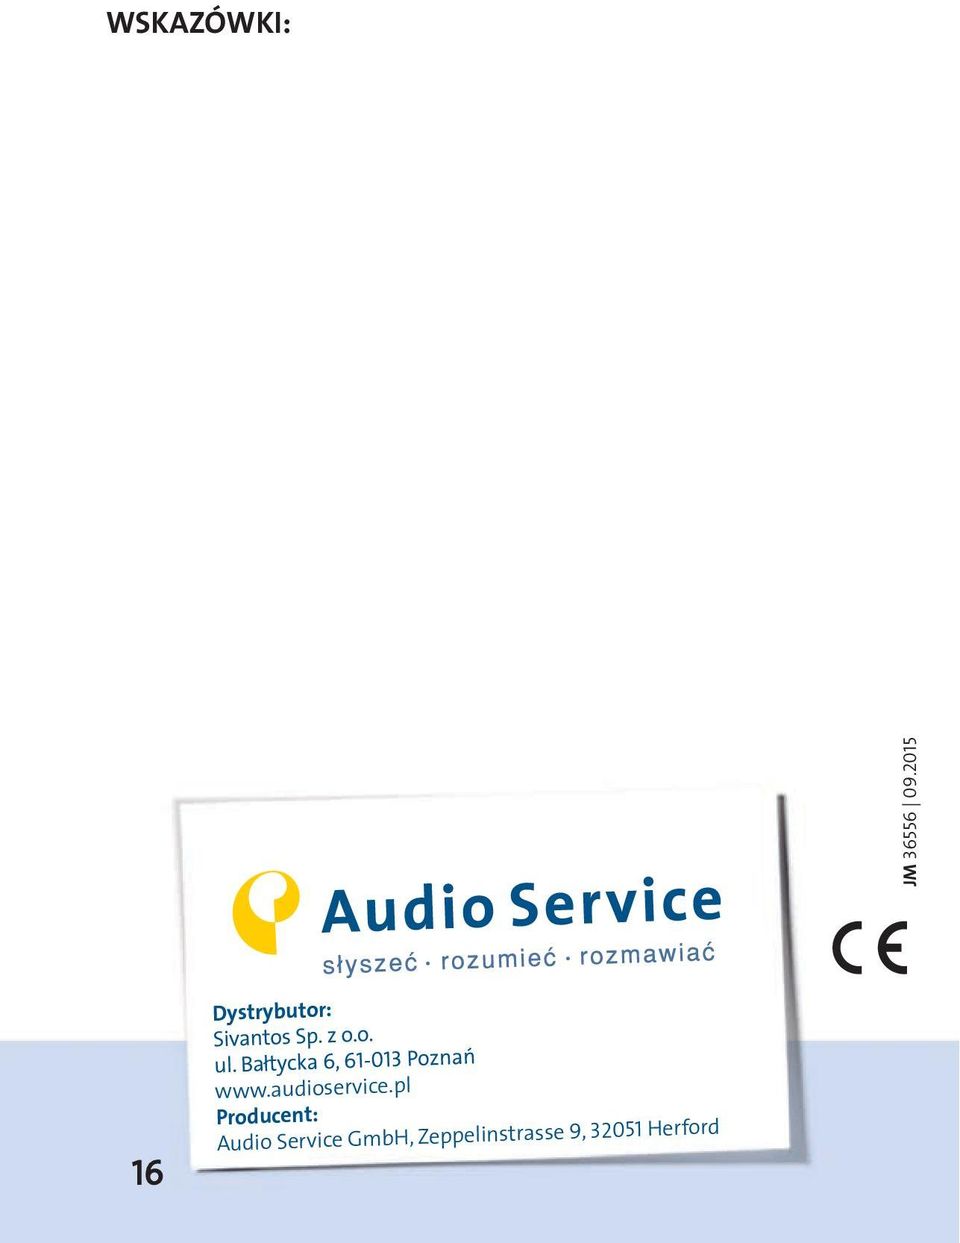 pl www.audioservice.